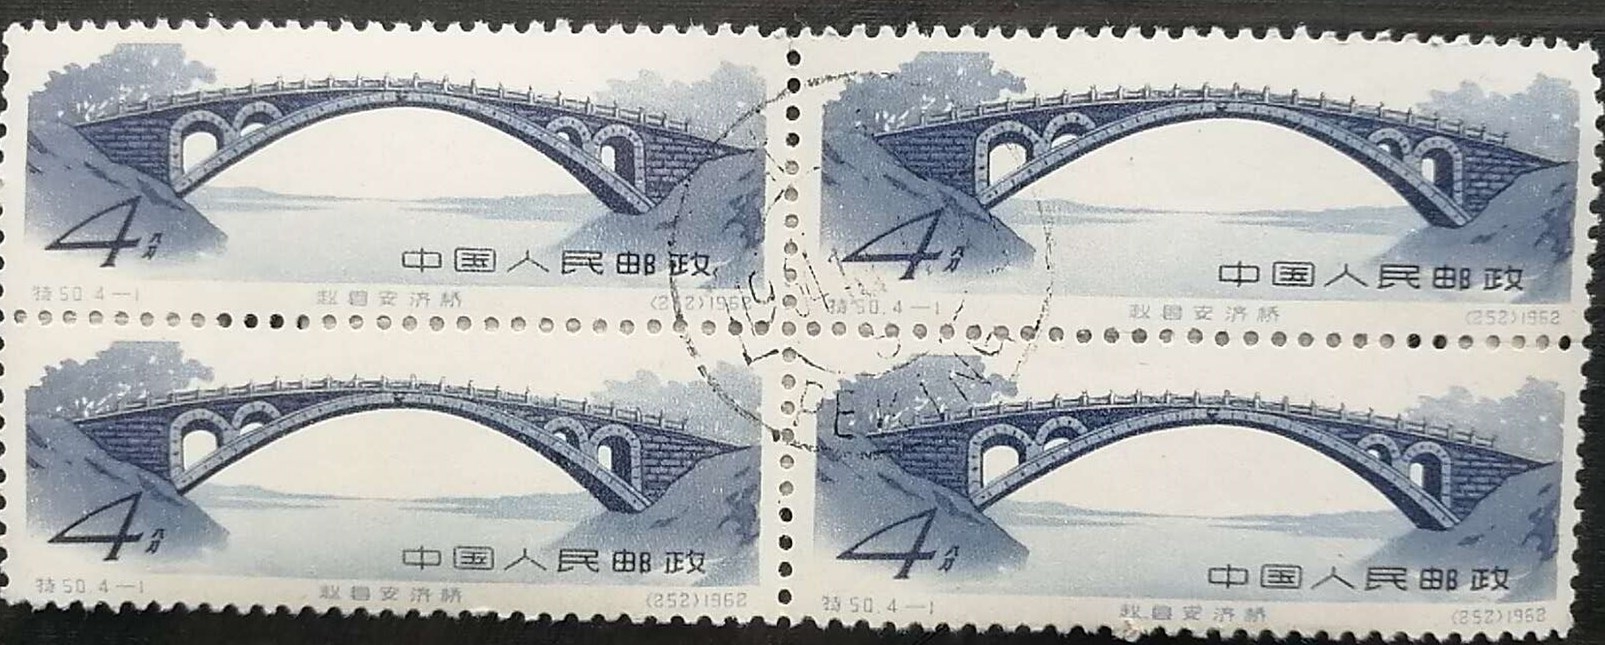 赵州桥的特种邮票